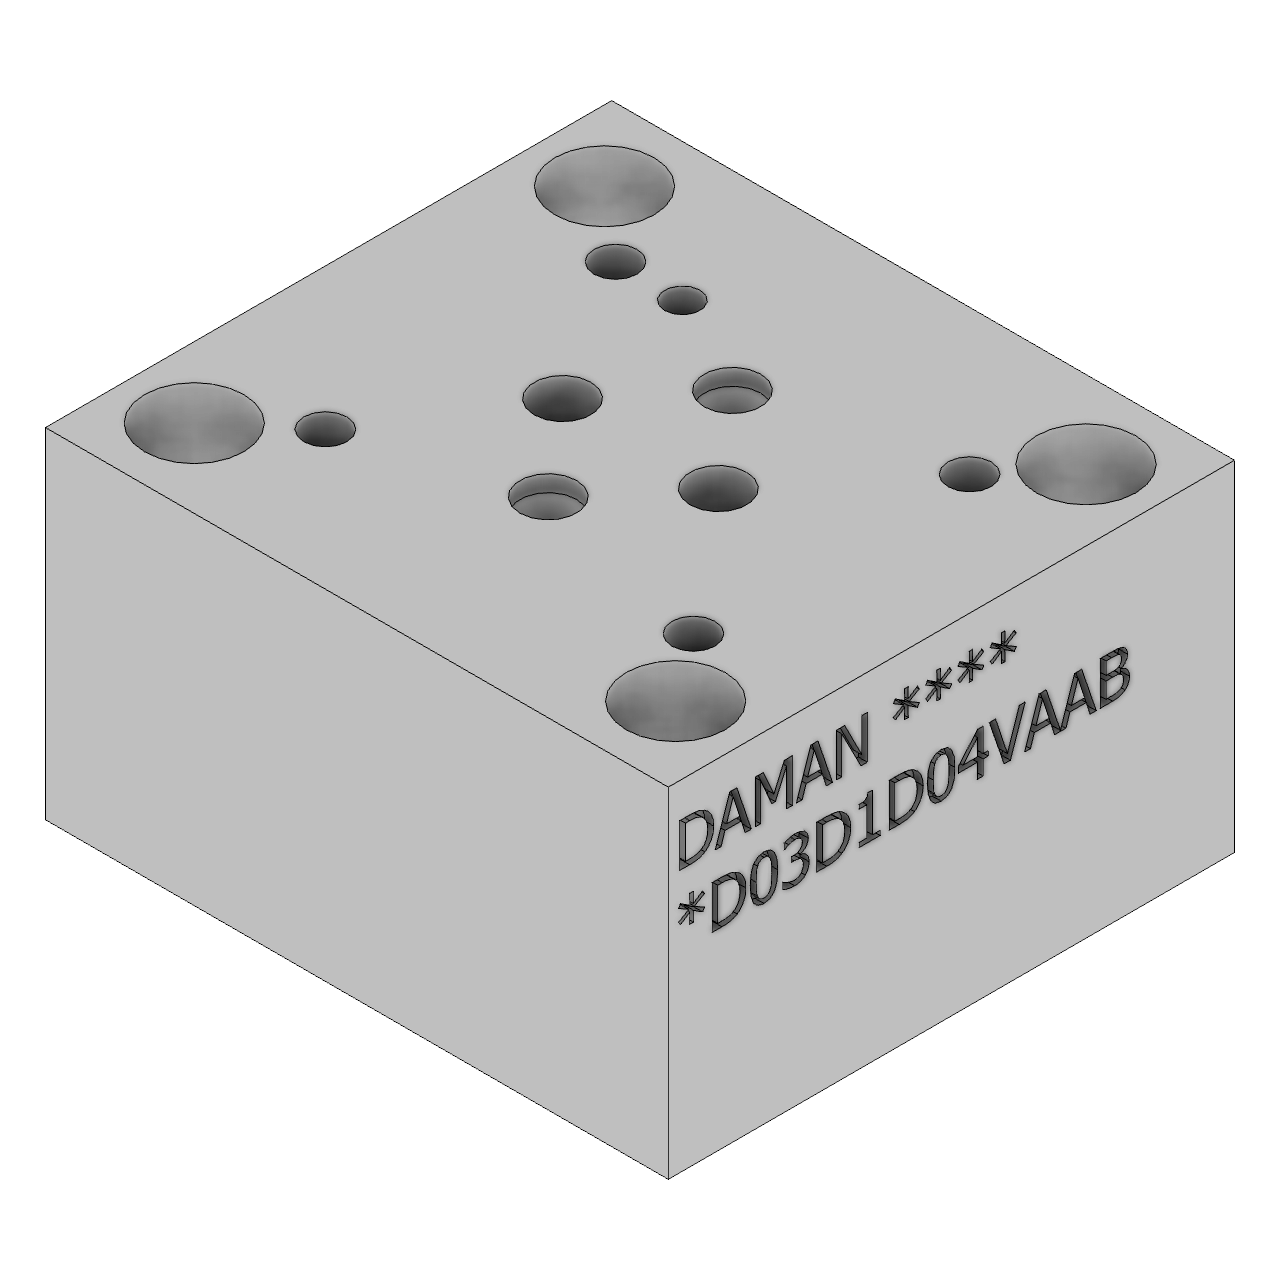 DD03D1D04VAAB - Valve Adaptors